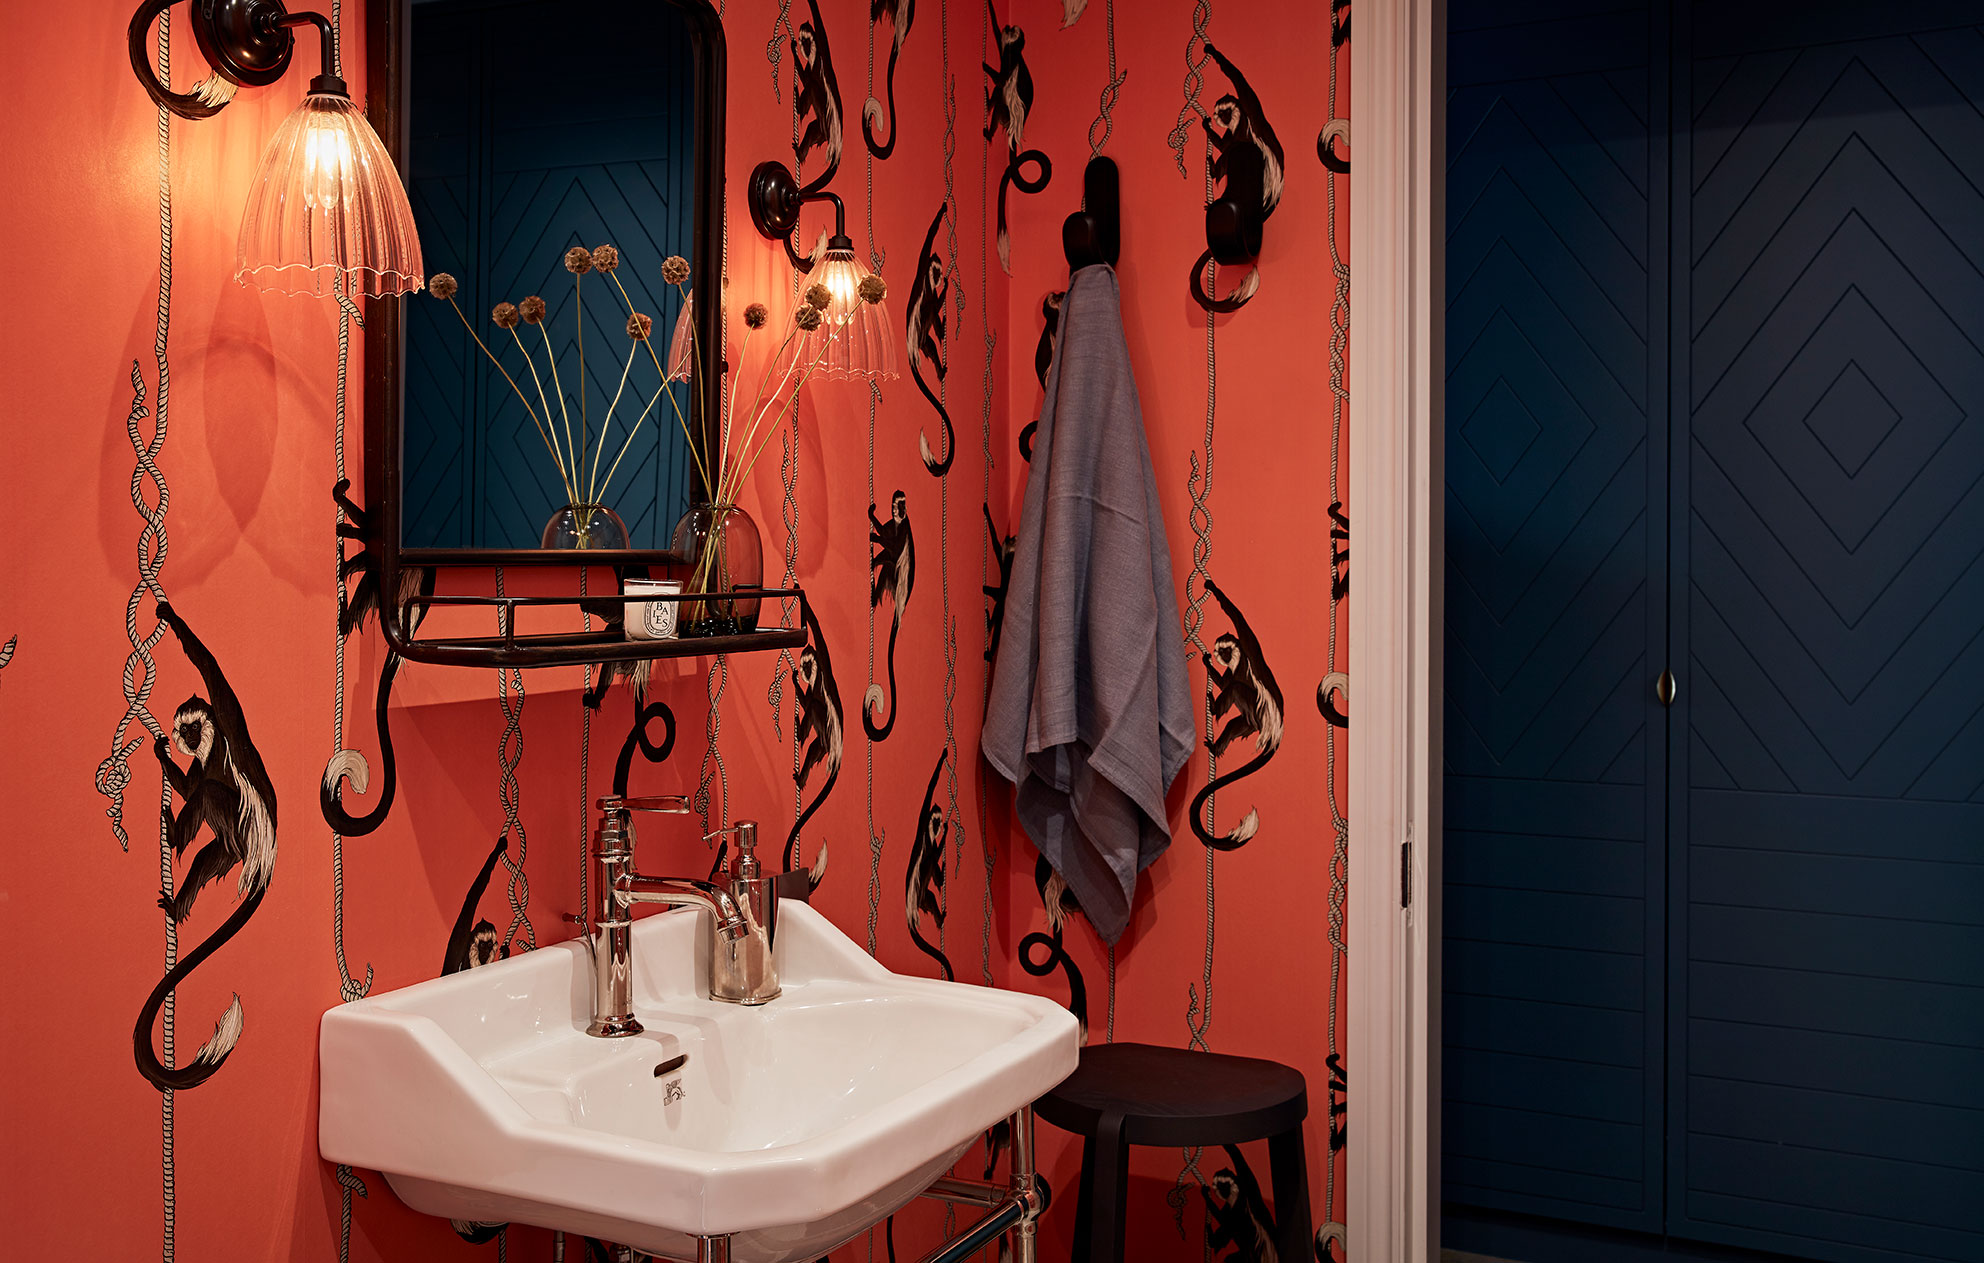 Queens Park bathroom sink with unusual red wallpaper and matte black doors